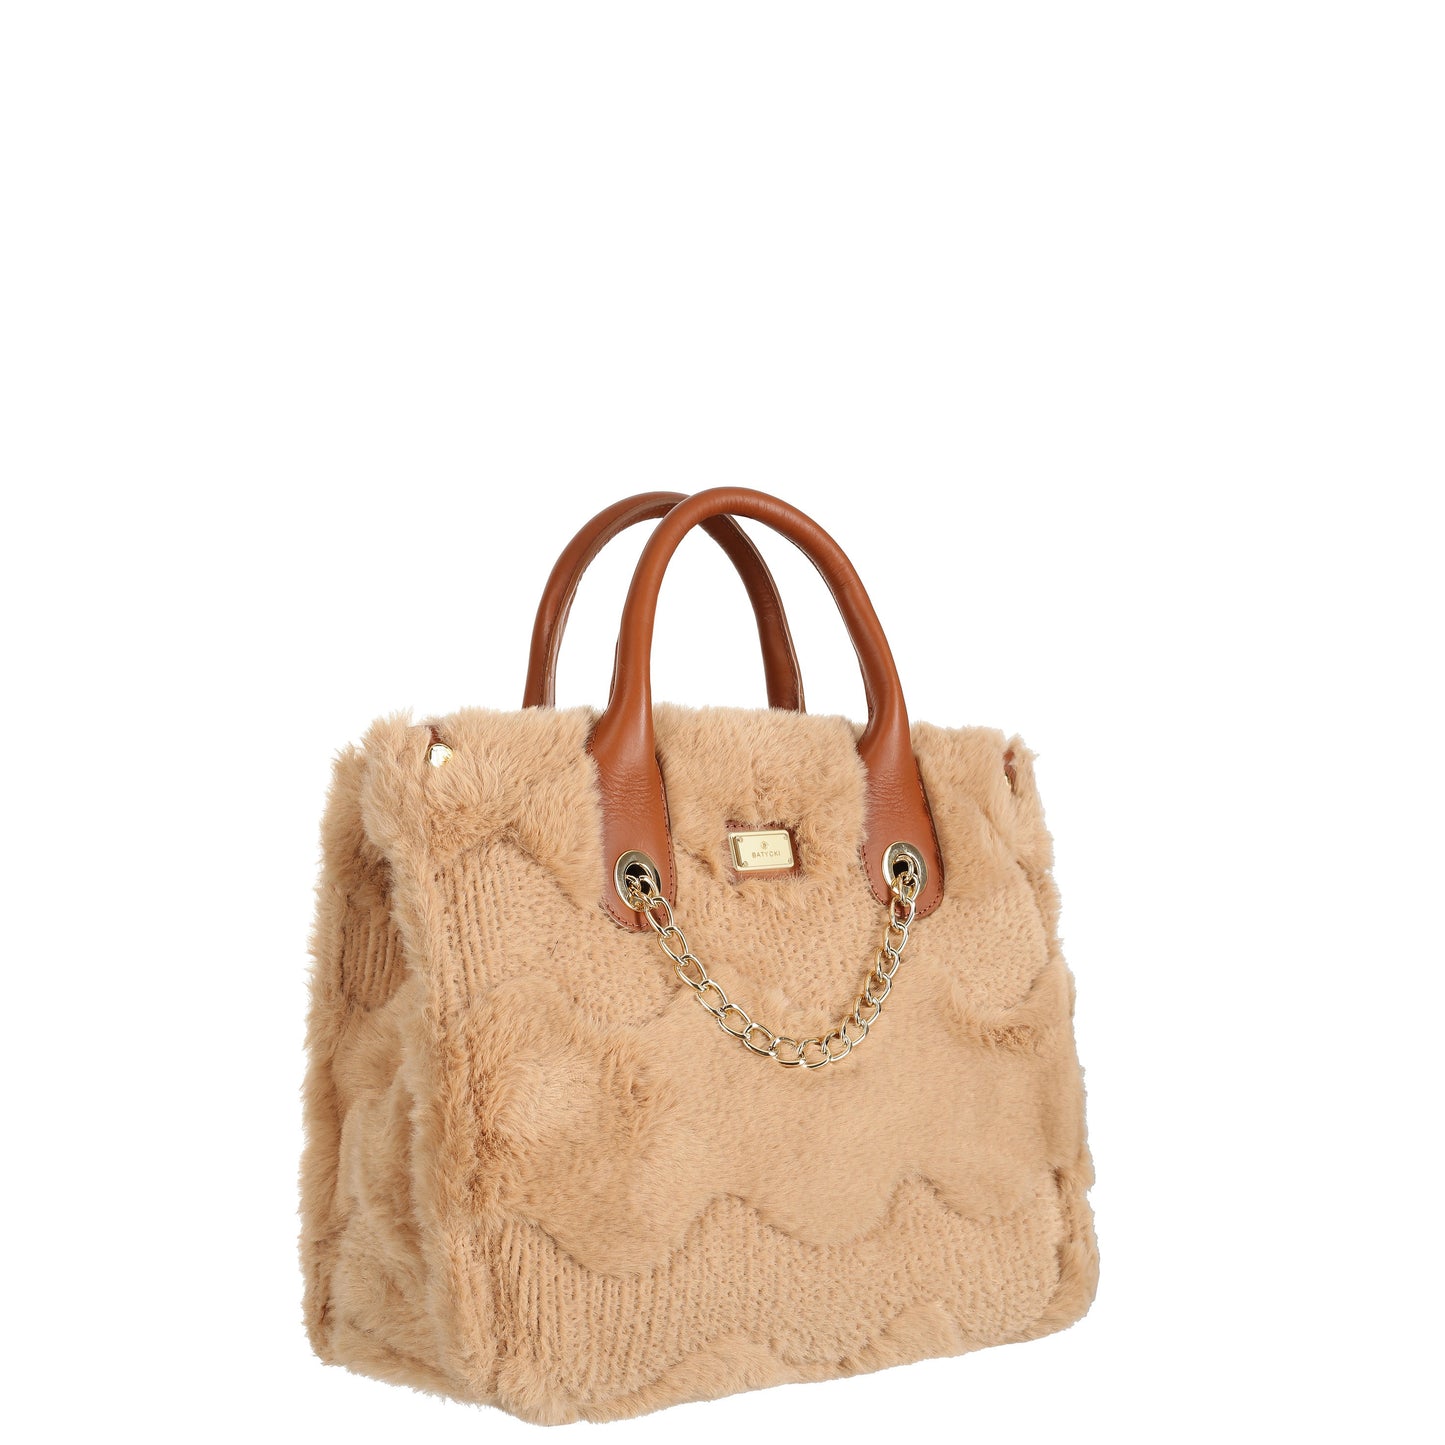 MUSSIE CAMEL women's handbag